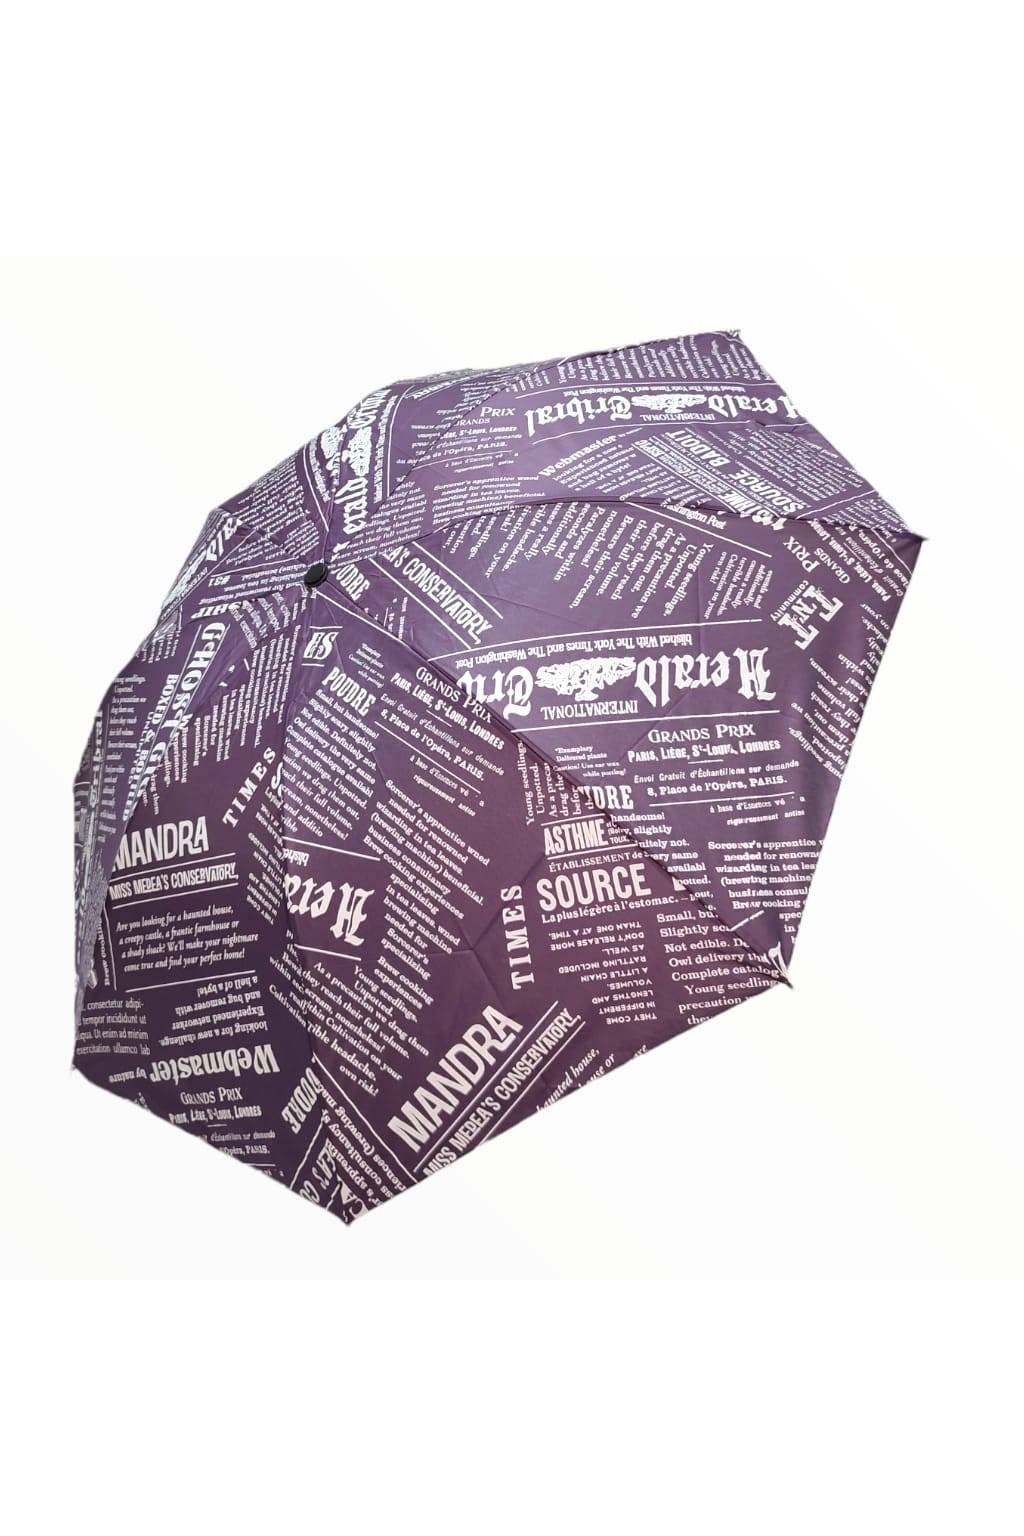 Vetruodolný dáždnik GRAND fialový www.kabelky vypredaj.eu (1)